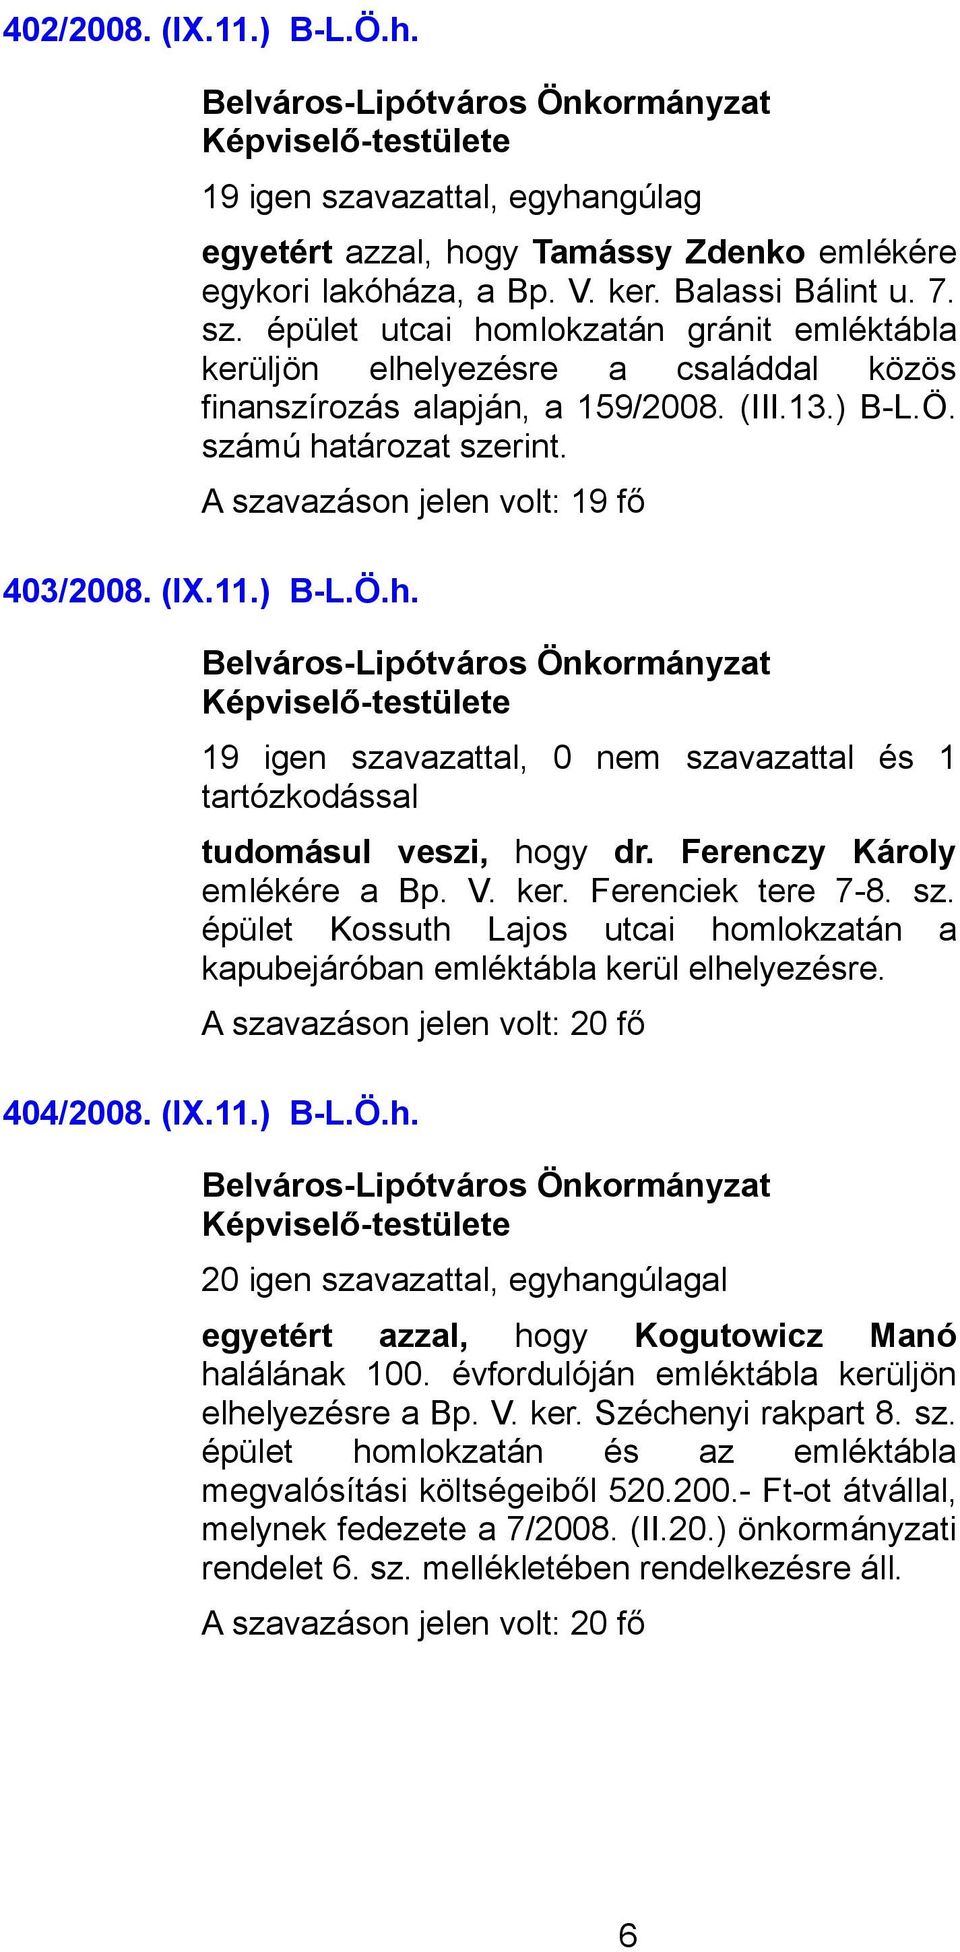 sz. épület Kossuth Lajos utcai homlokzatán a kapubejáróban emléktábla kerül elhelyezésre. 404/2008. (IX.11.) B-L.Ö.h. 20 igen szavazattal, egyhangúlagal egyetért azzal, hogy Kogutowicz Manó halálának 100.